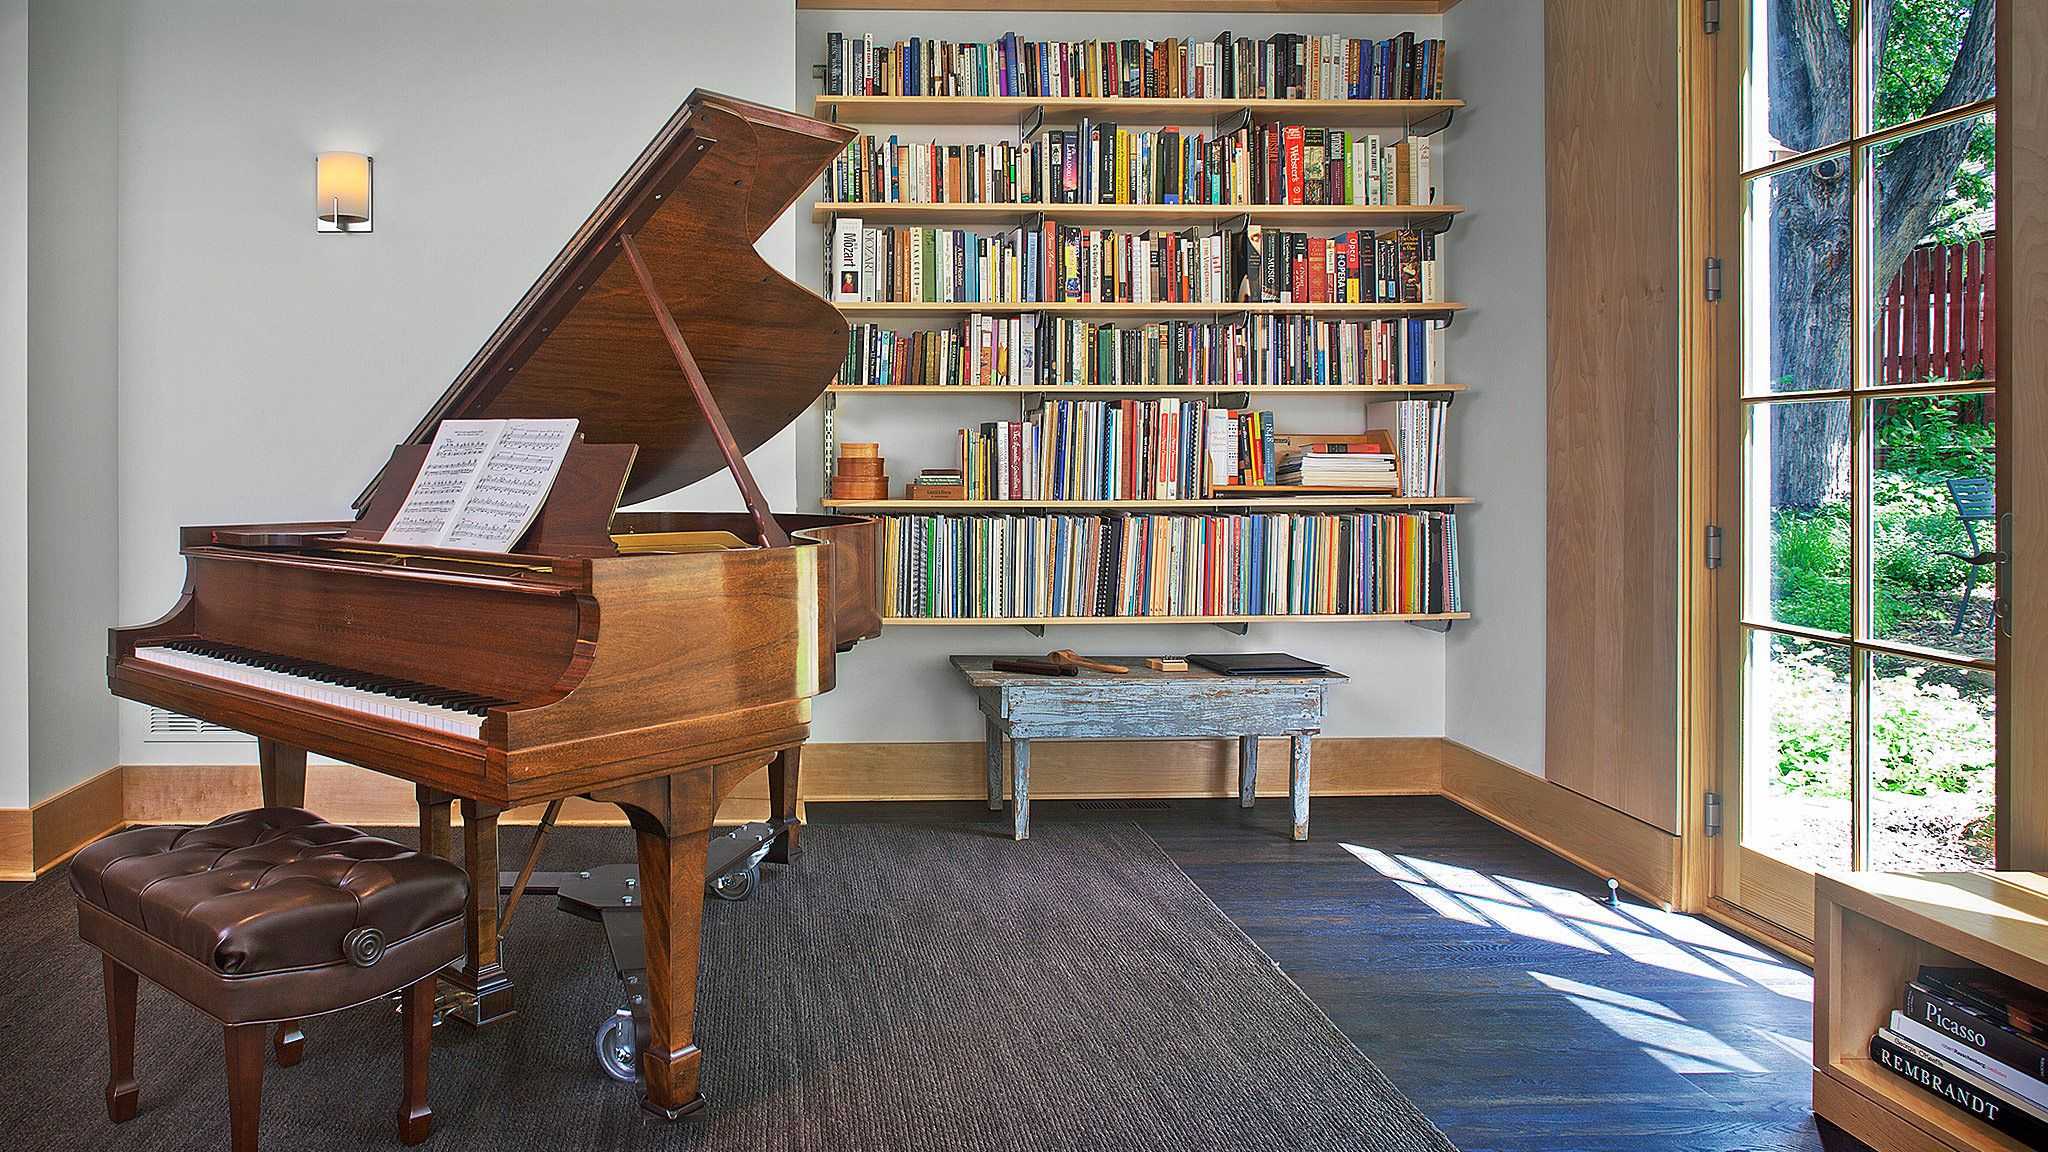 Есть библиотека песня. Интерьер комнаты с пианино. Комната с пианино. Музыкальная библиотека. Пианино в библиотеке.